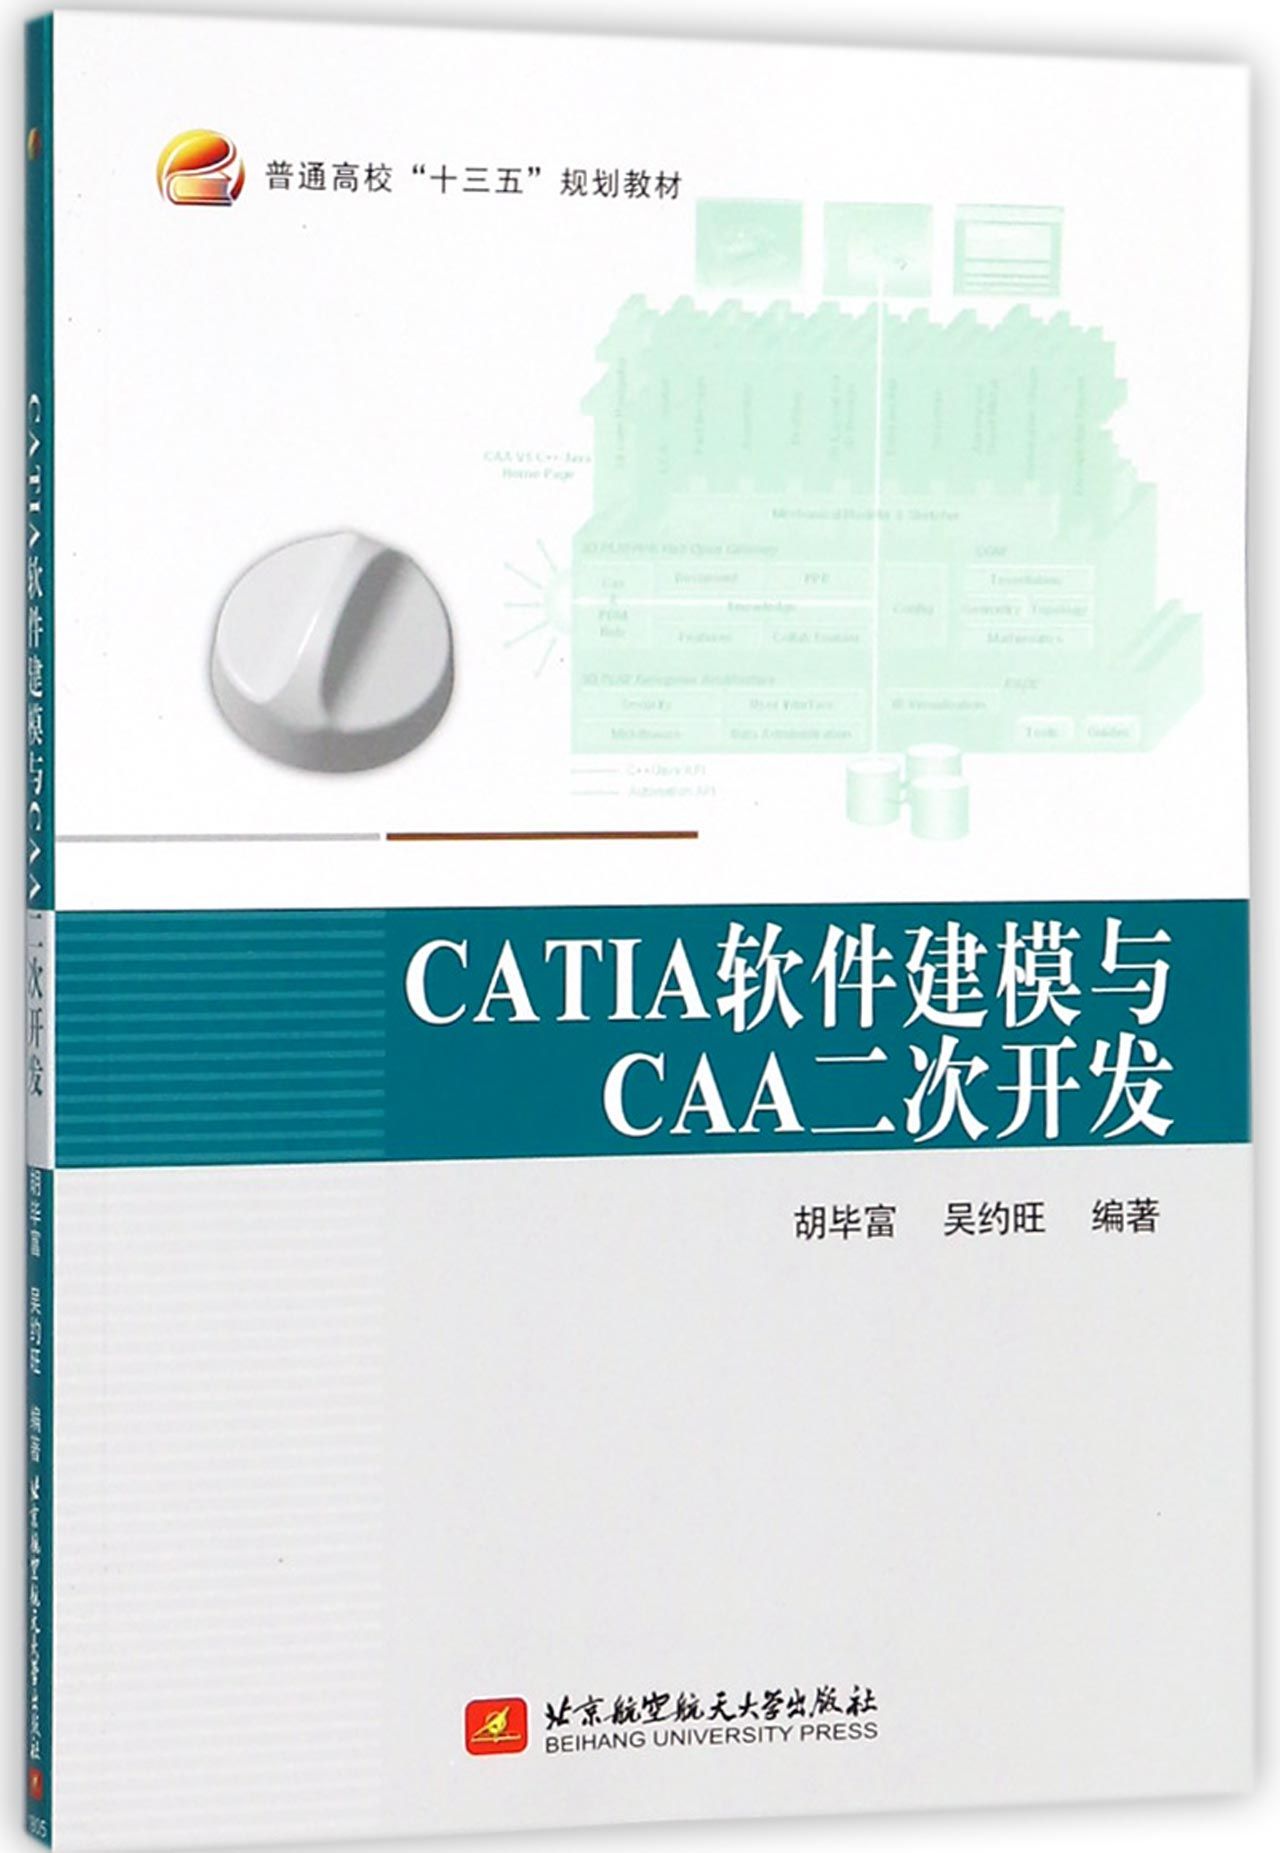 【现货】CATIA软件建模与CAA二次开发(普通高校十三五规划教材)胡富9787512427051北京航空航天大学出版社